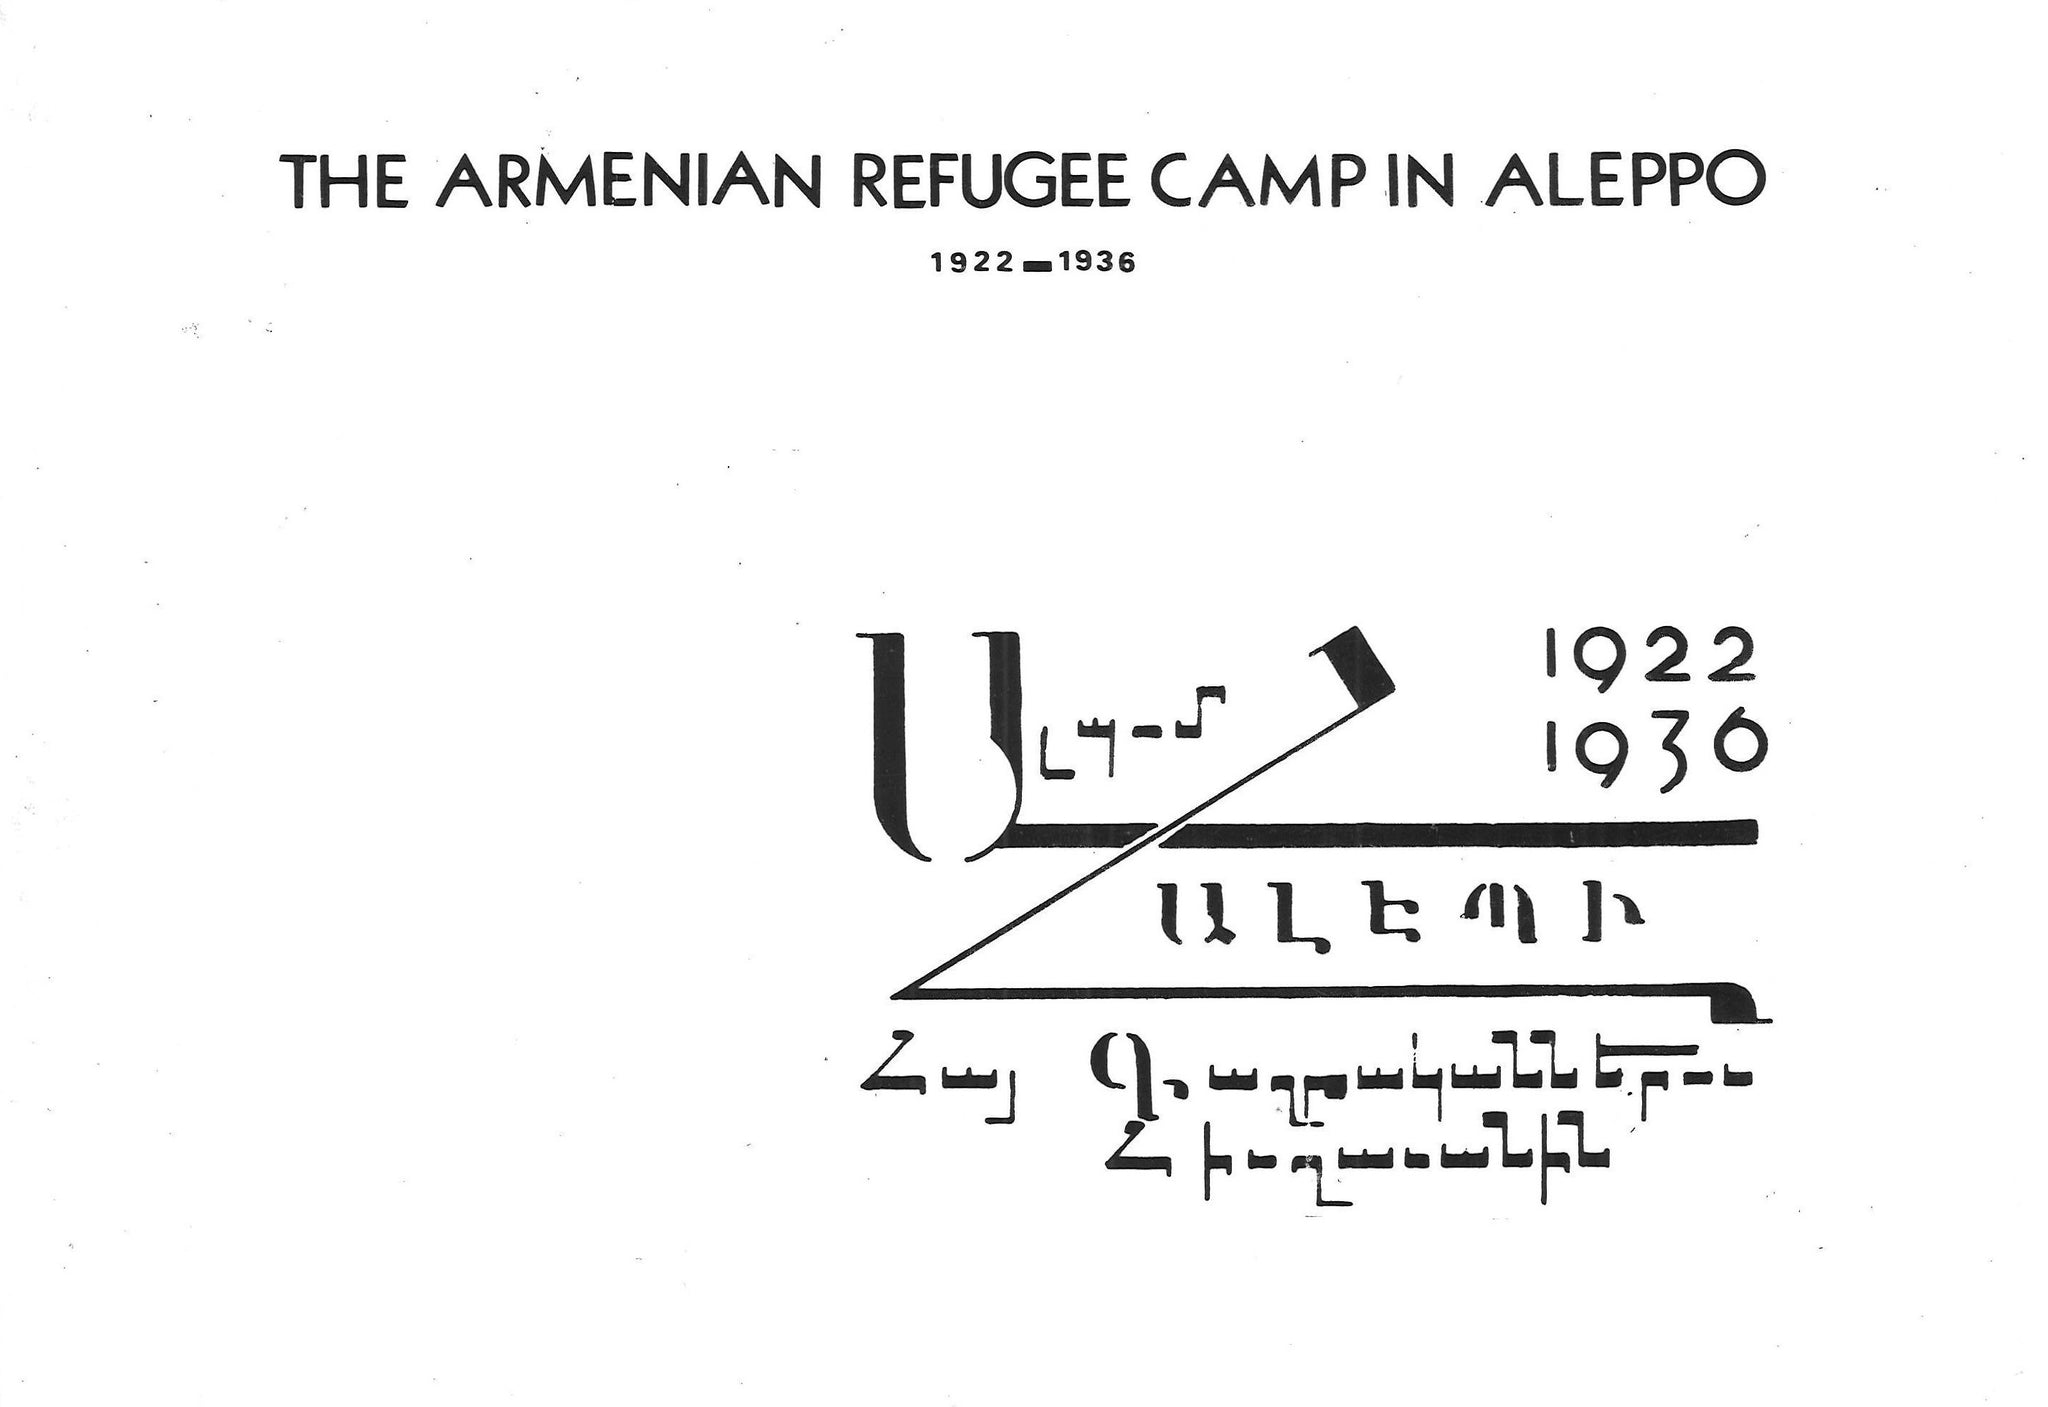 ARMENIAN REFUGEE CAMP IN ALEPPO, 1922-1936